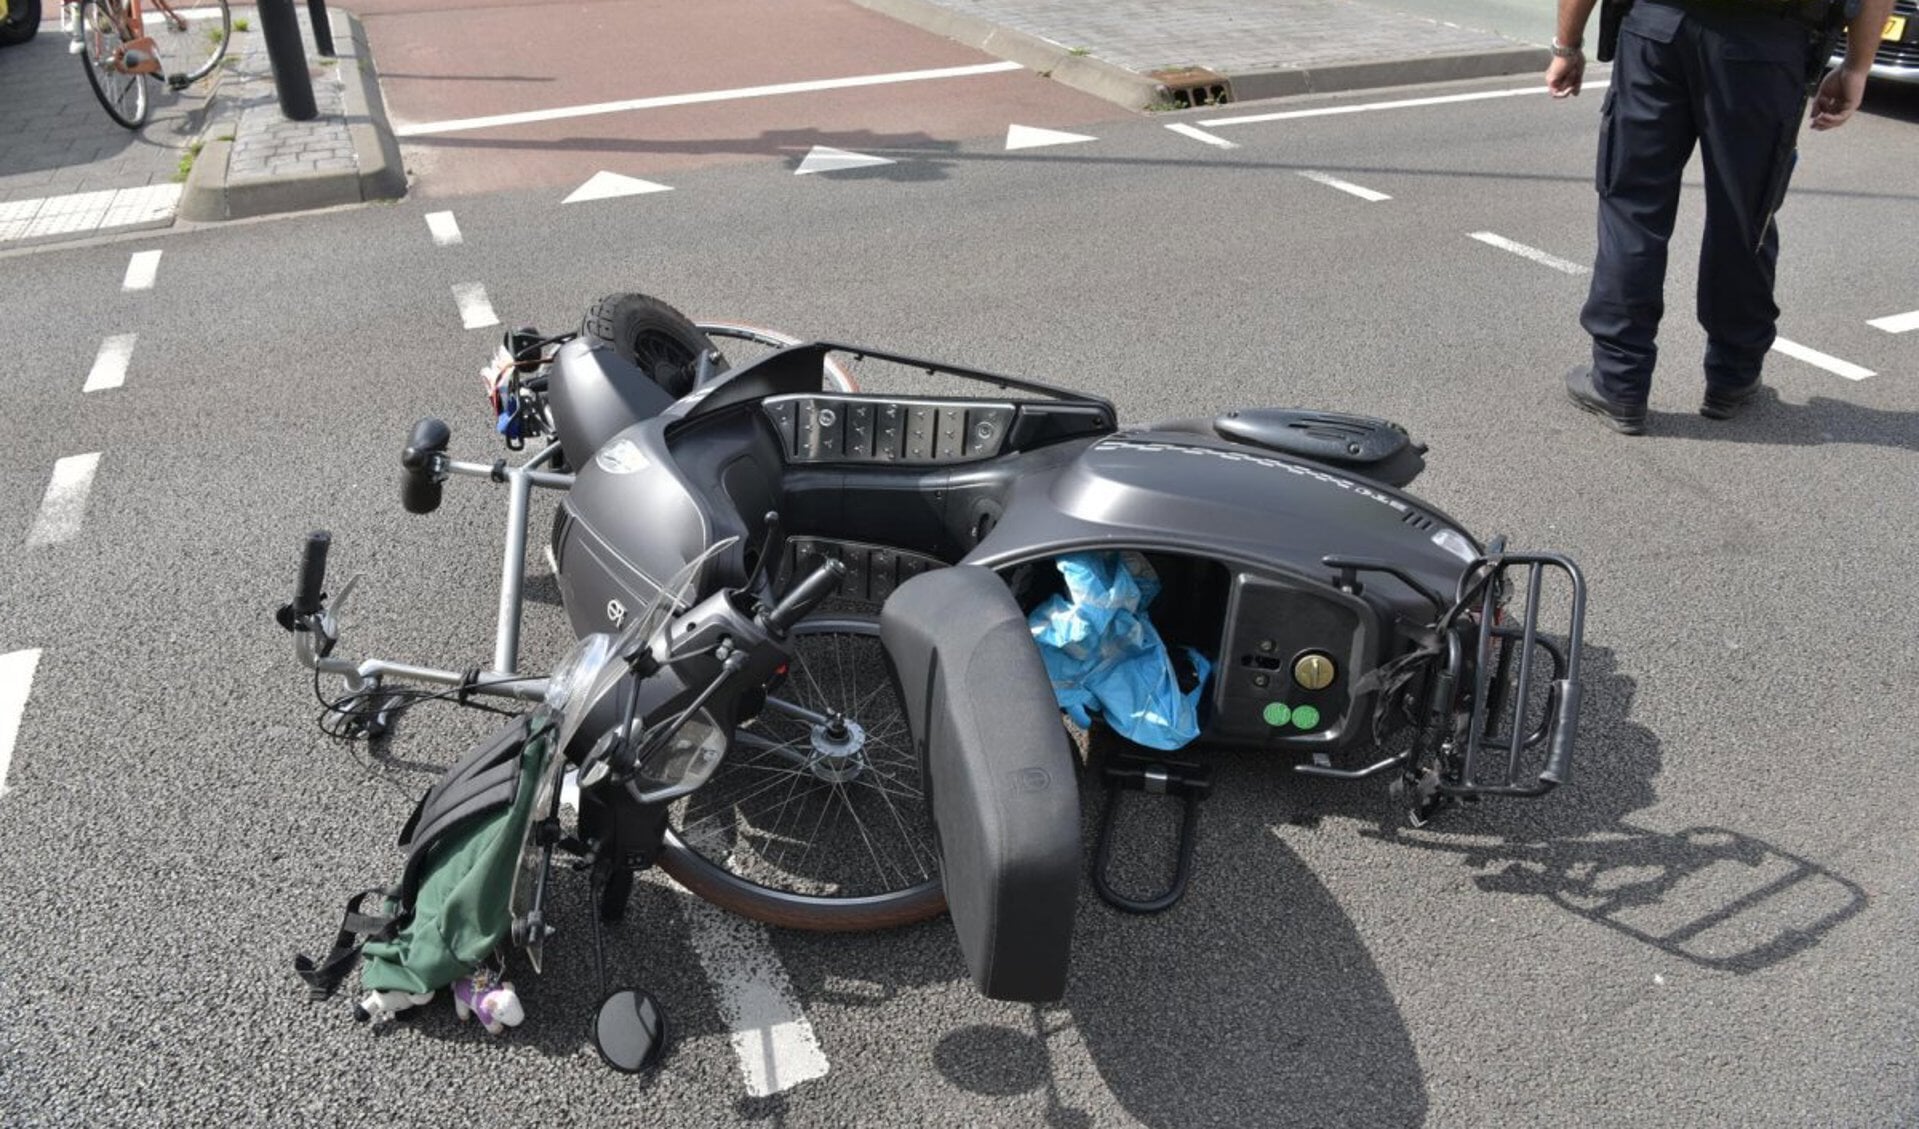 De bij het ongeval geraakte scooter en fiets.